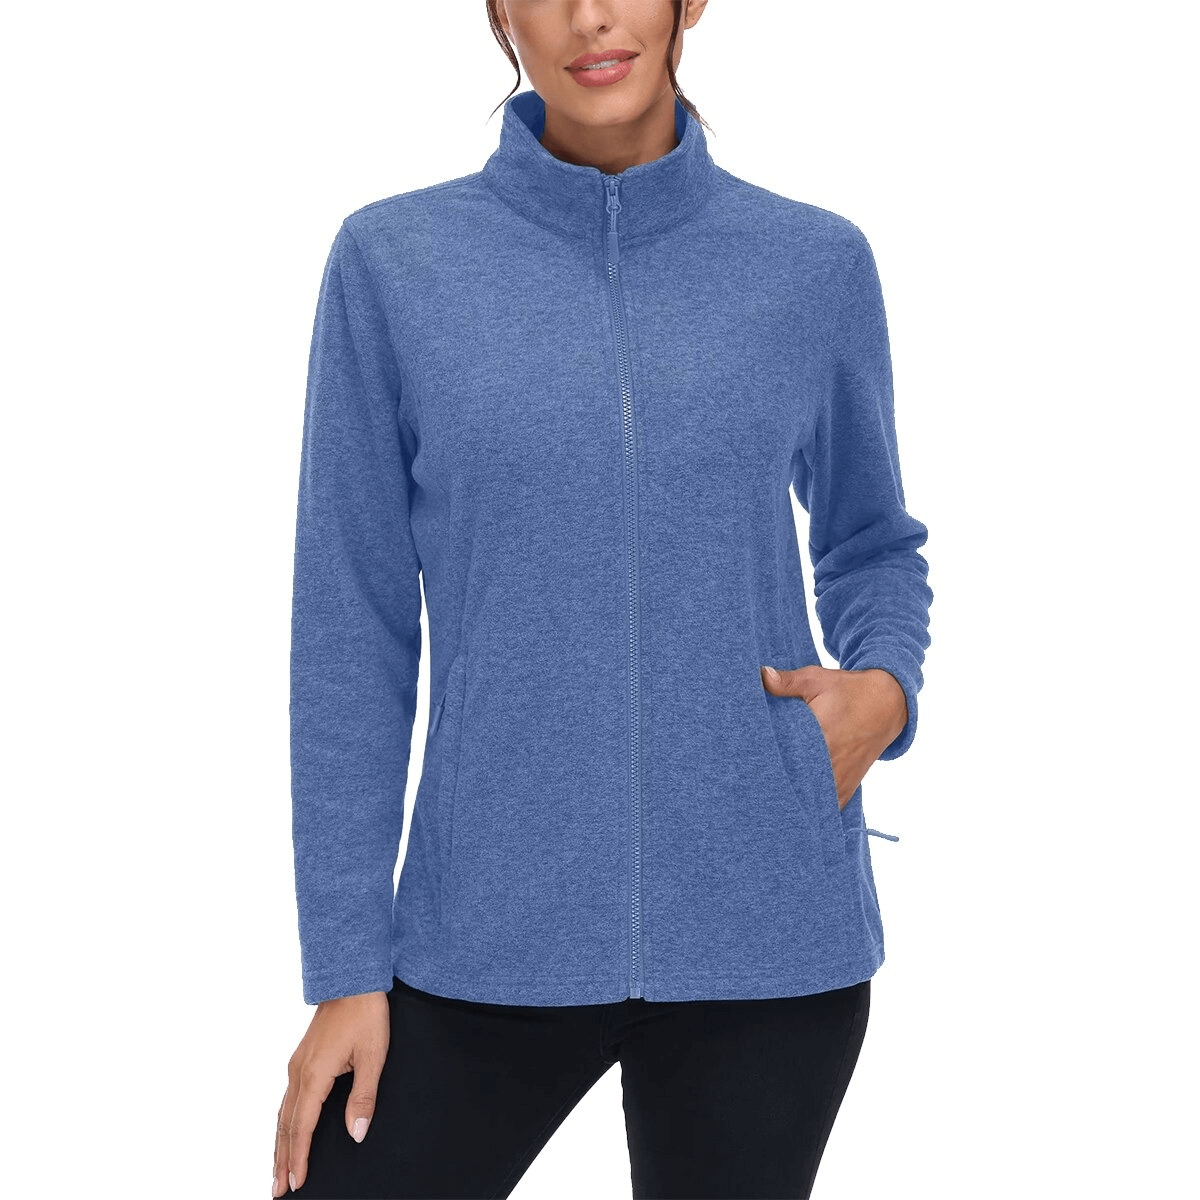 Fleece Women's Sweatshirt with Zipper for Running - SF0127